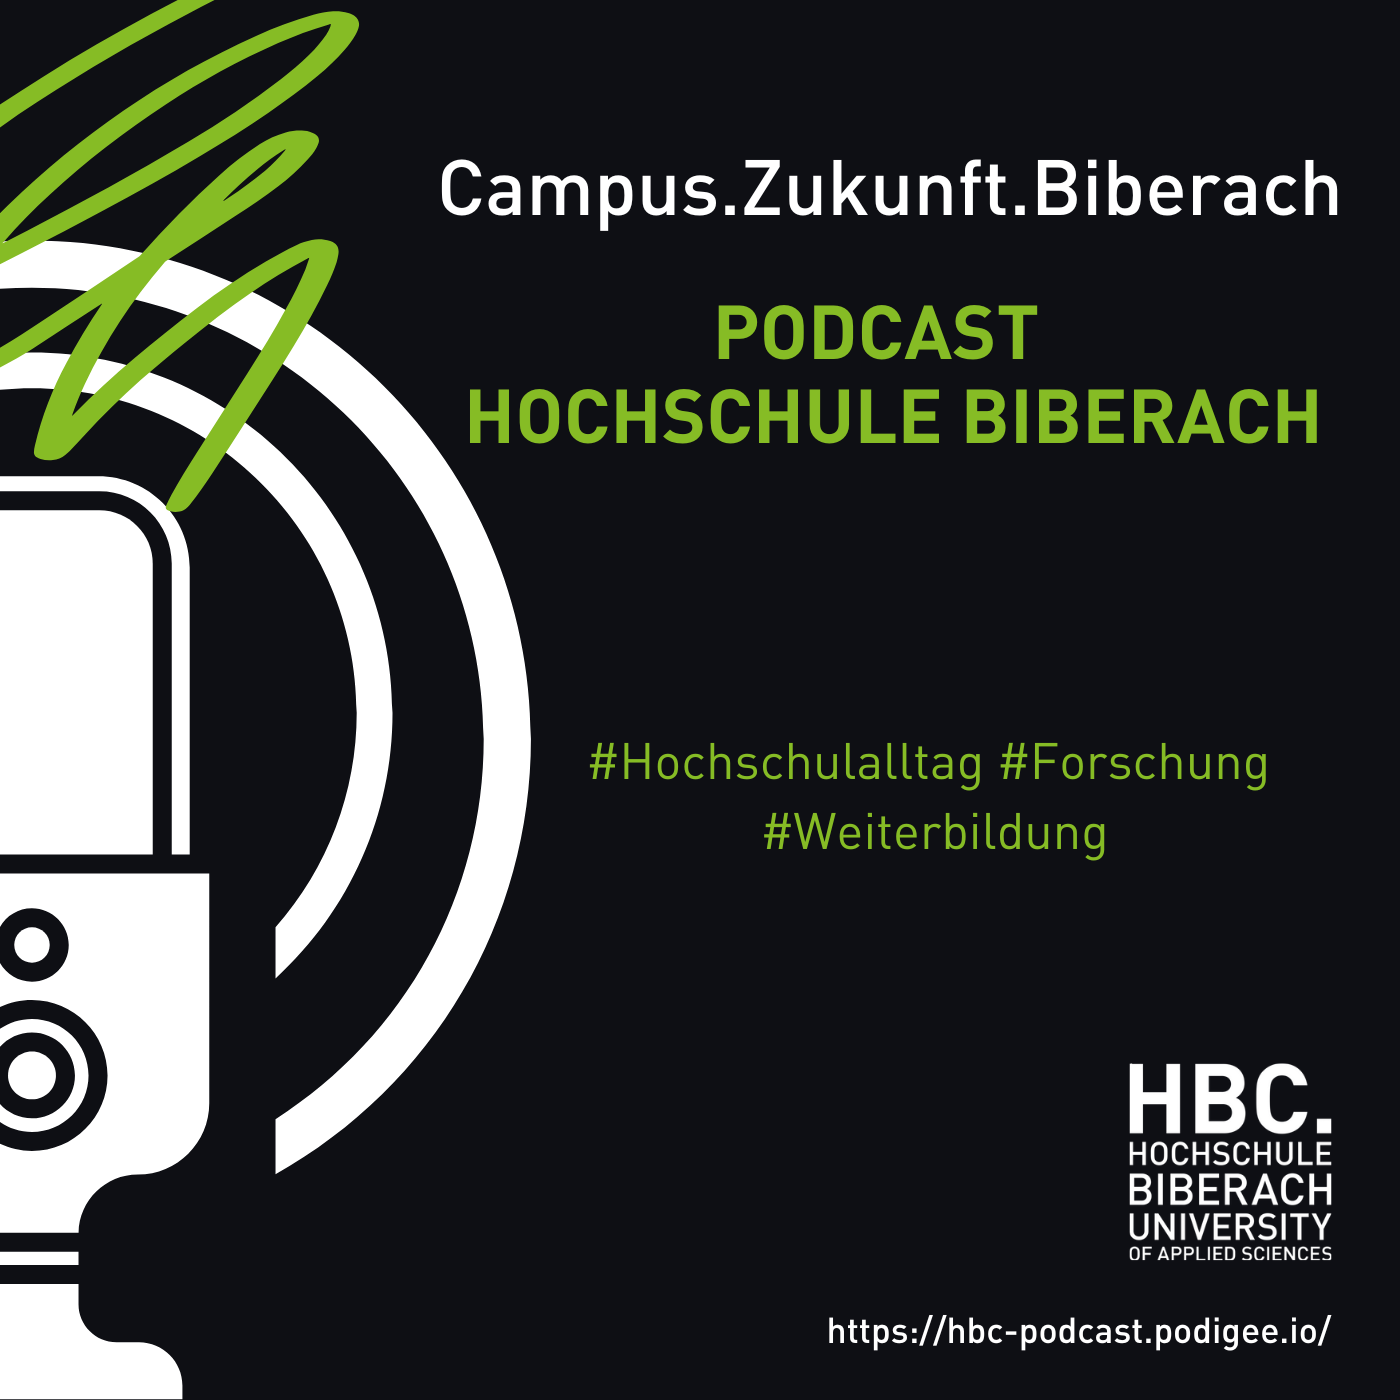 Campus.Zukunft.Biberach - Podcast der Hochschule Biberach